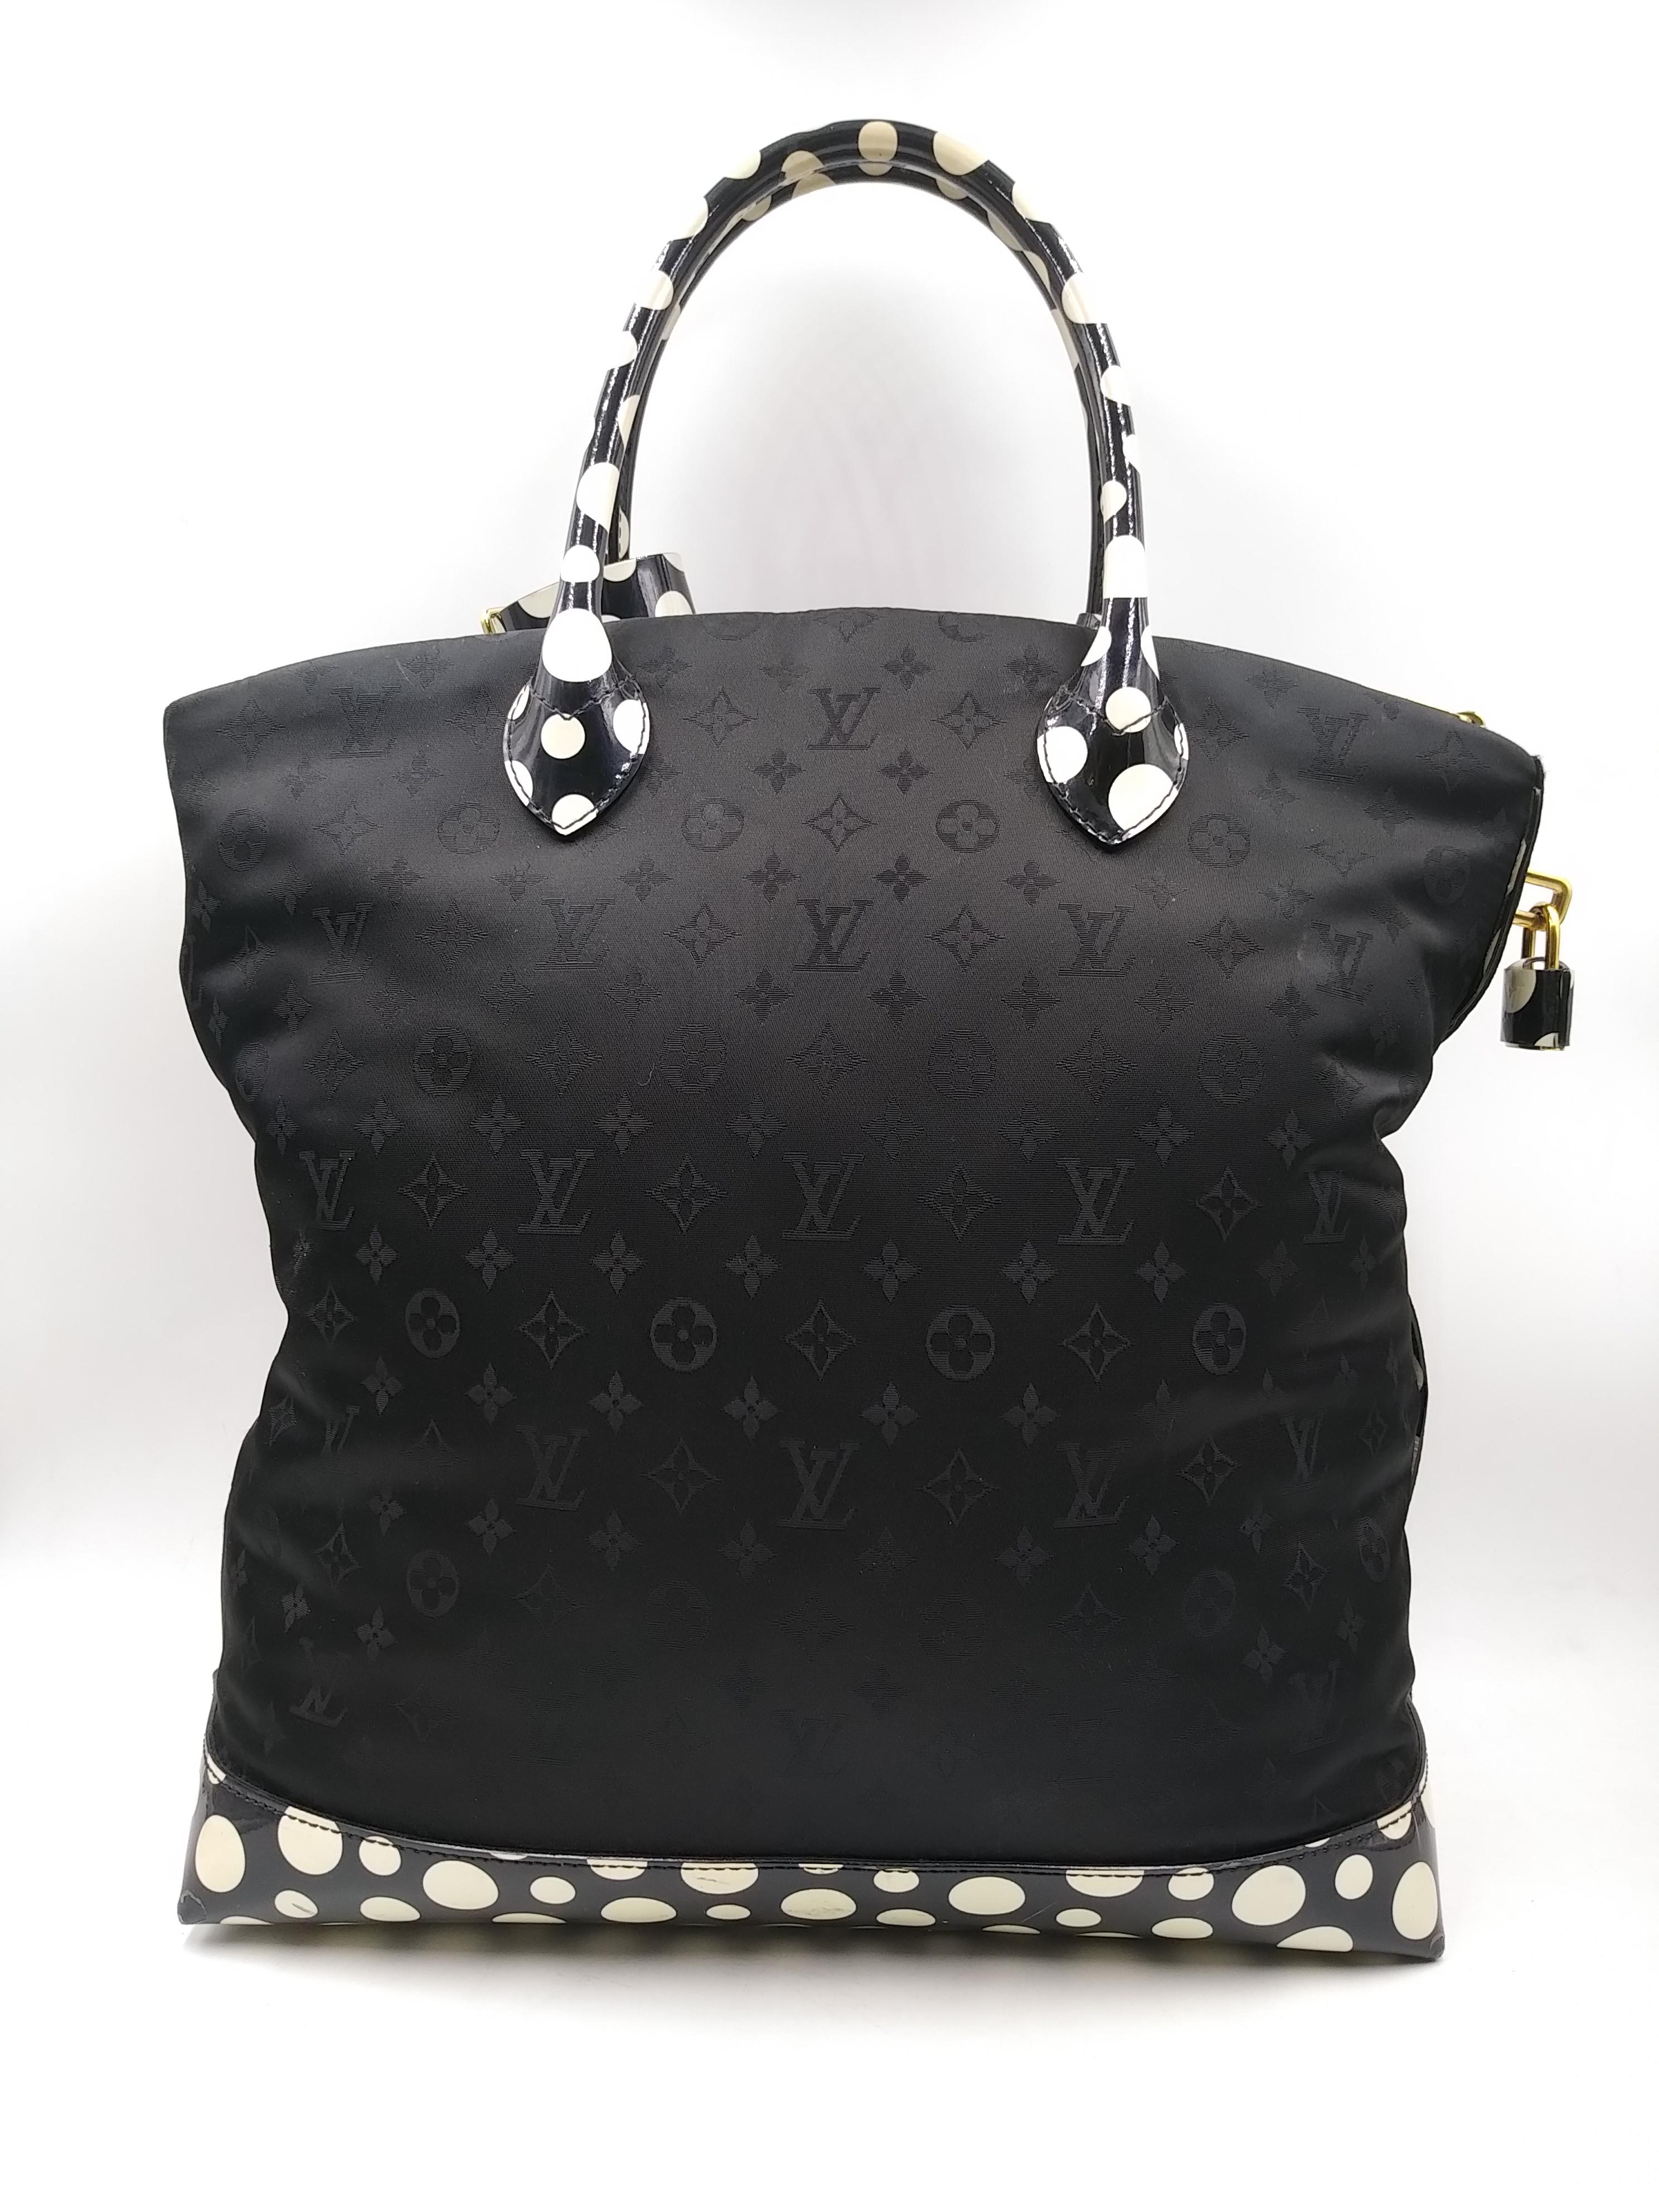 Women's or Men's Louis Vuitton Black Monogram Satin Yayoi Kusama Dots Lockit Vertical MM Bag 2012